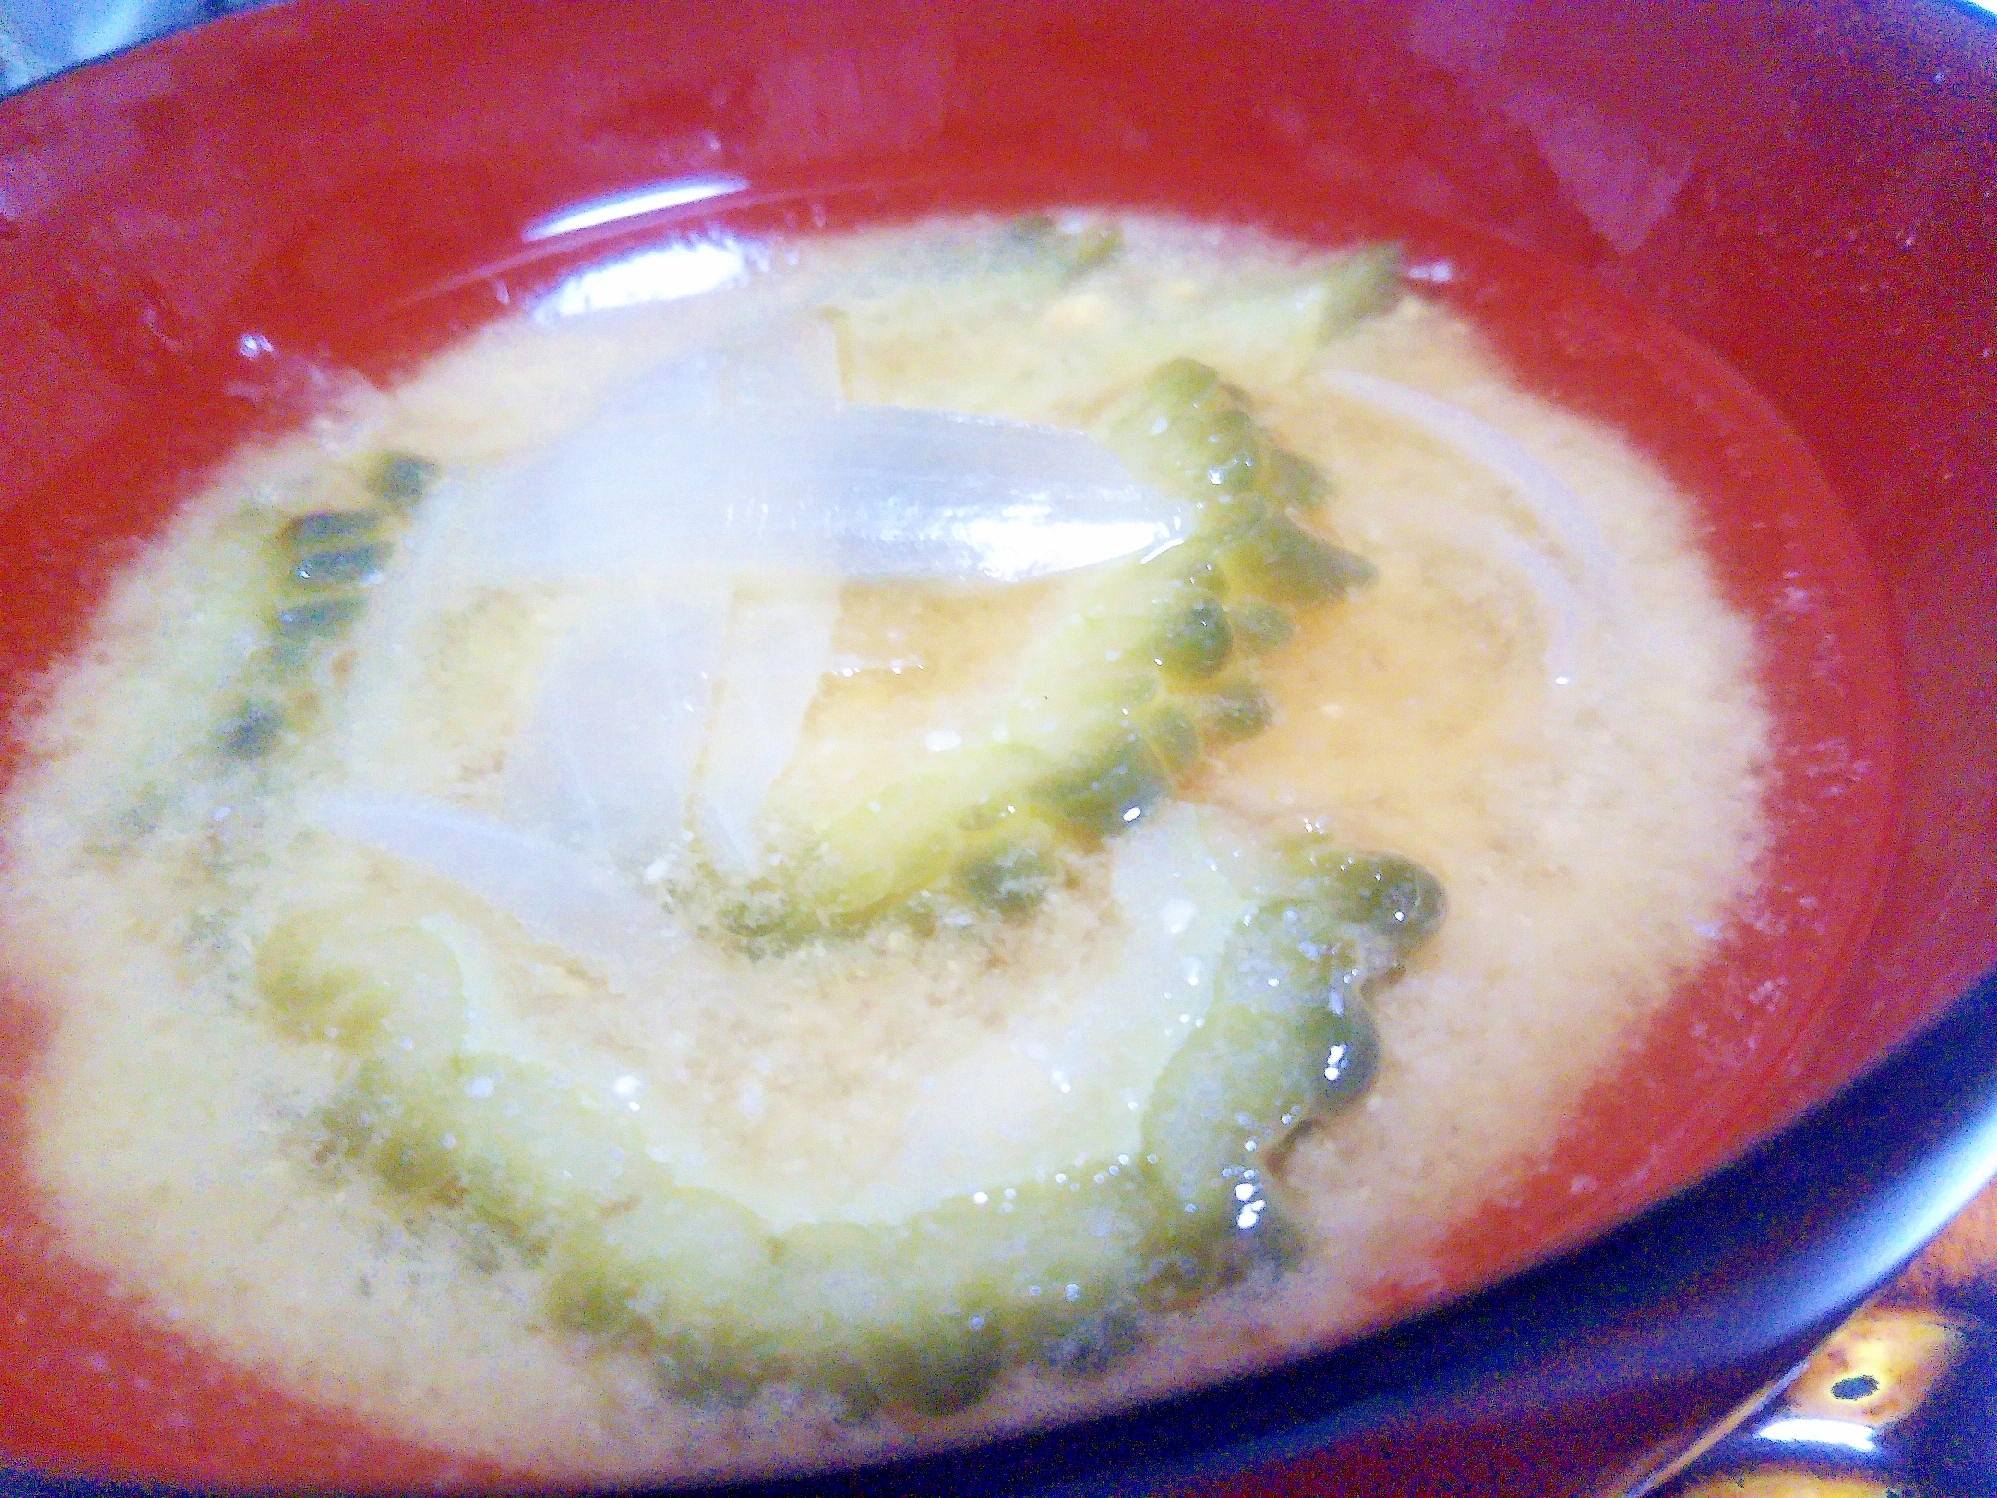 ゴーヤ&玉葱の味噌汁